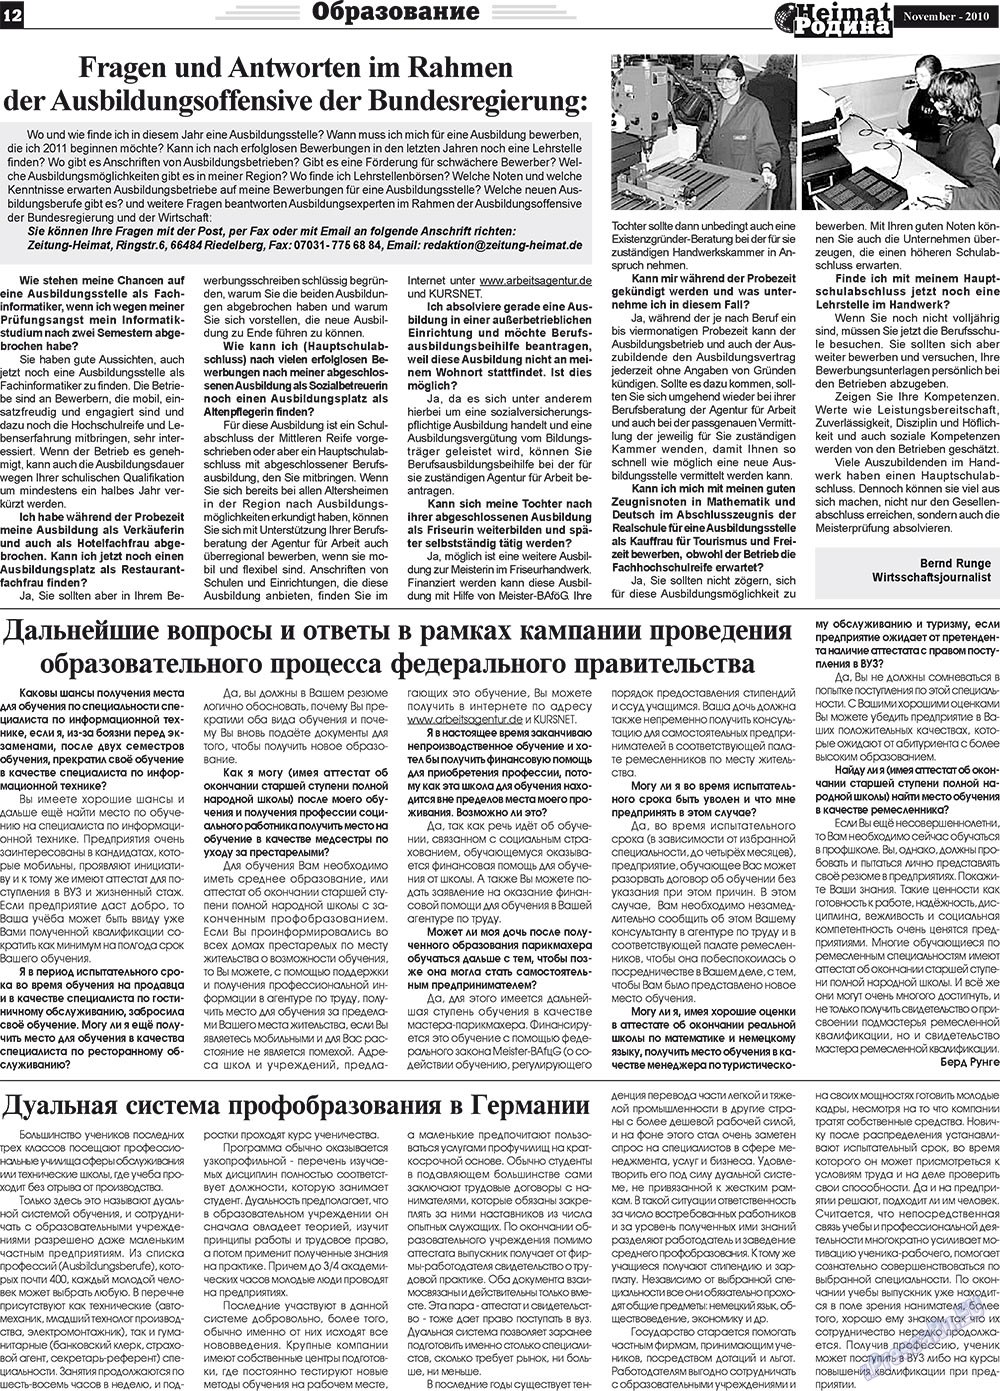 Heimat-Родина (газета). 2010 год, номер 11, стр. 12